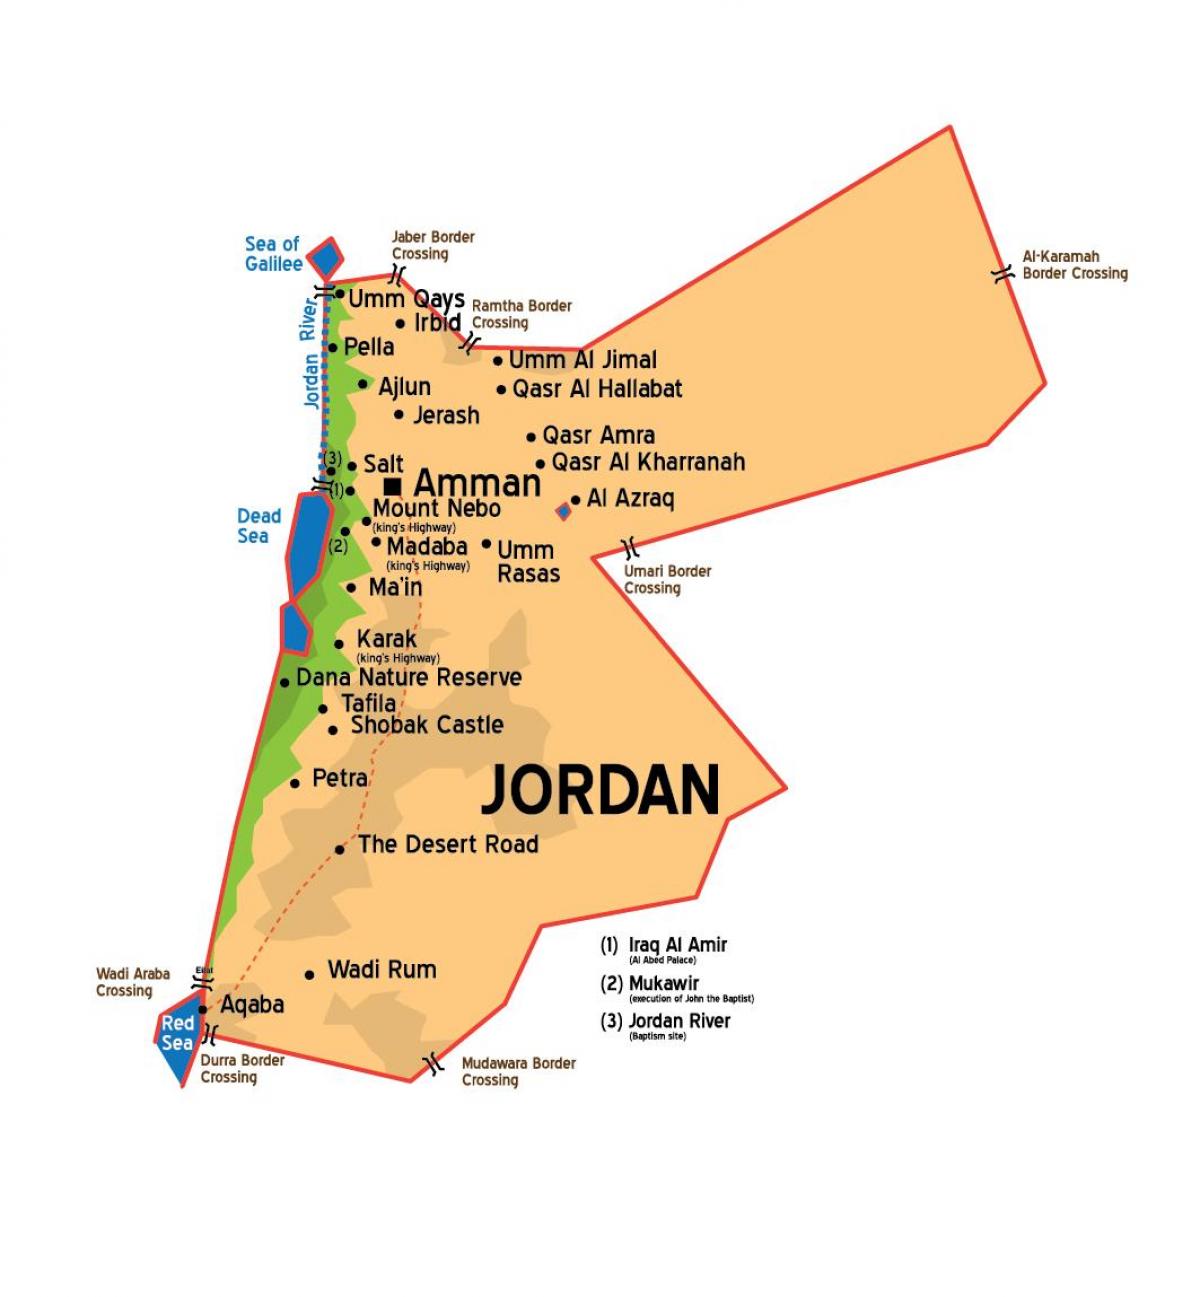 Jordan měst mapě